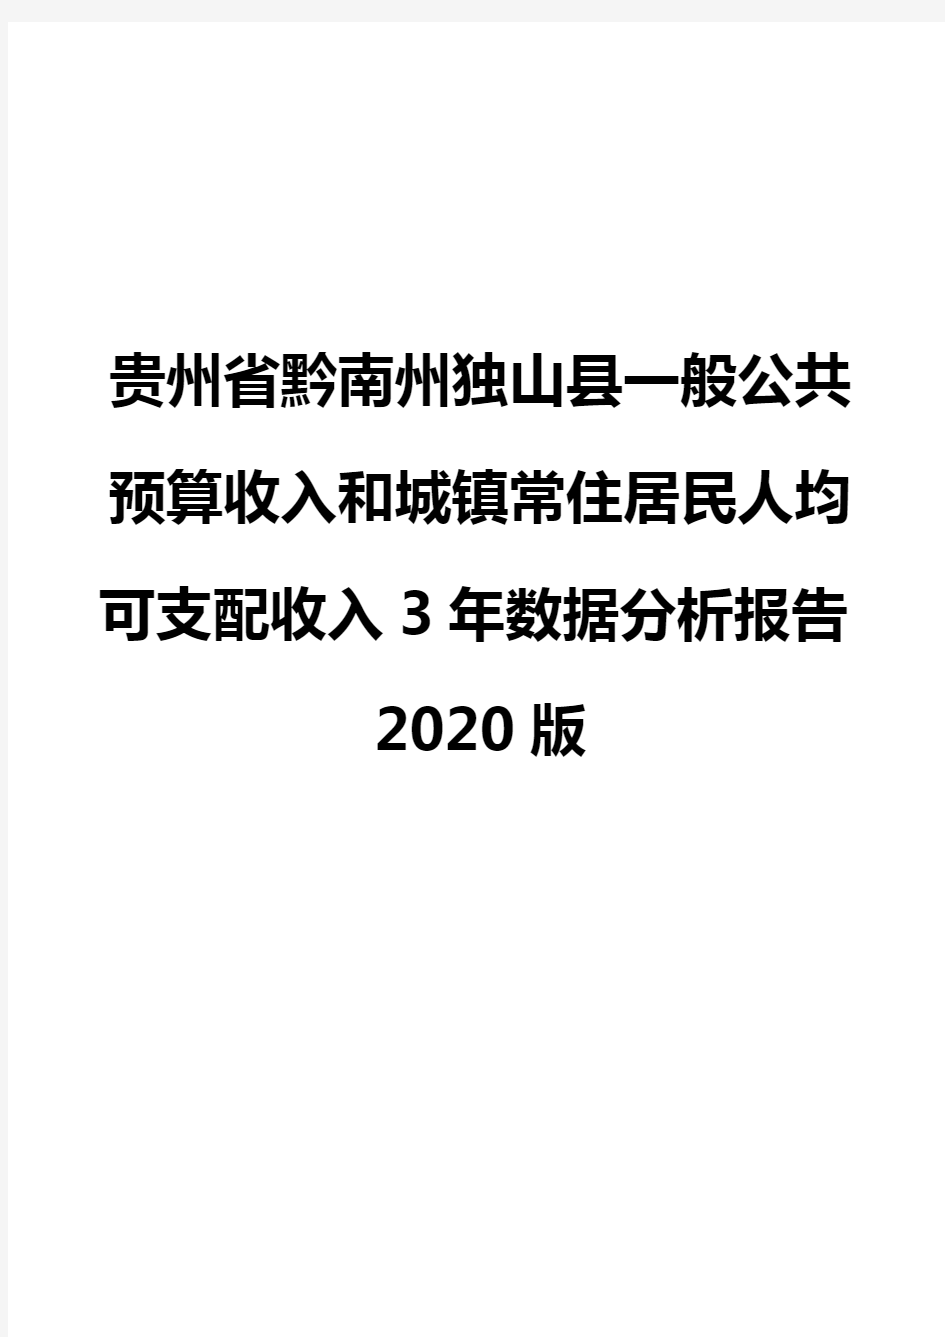 贵州省黔南州独山县一般公共预算收入和城镇常住居民人均可支配收入3年数据分析报告2020版